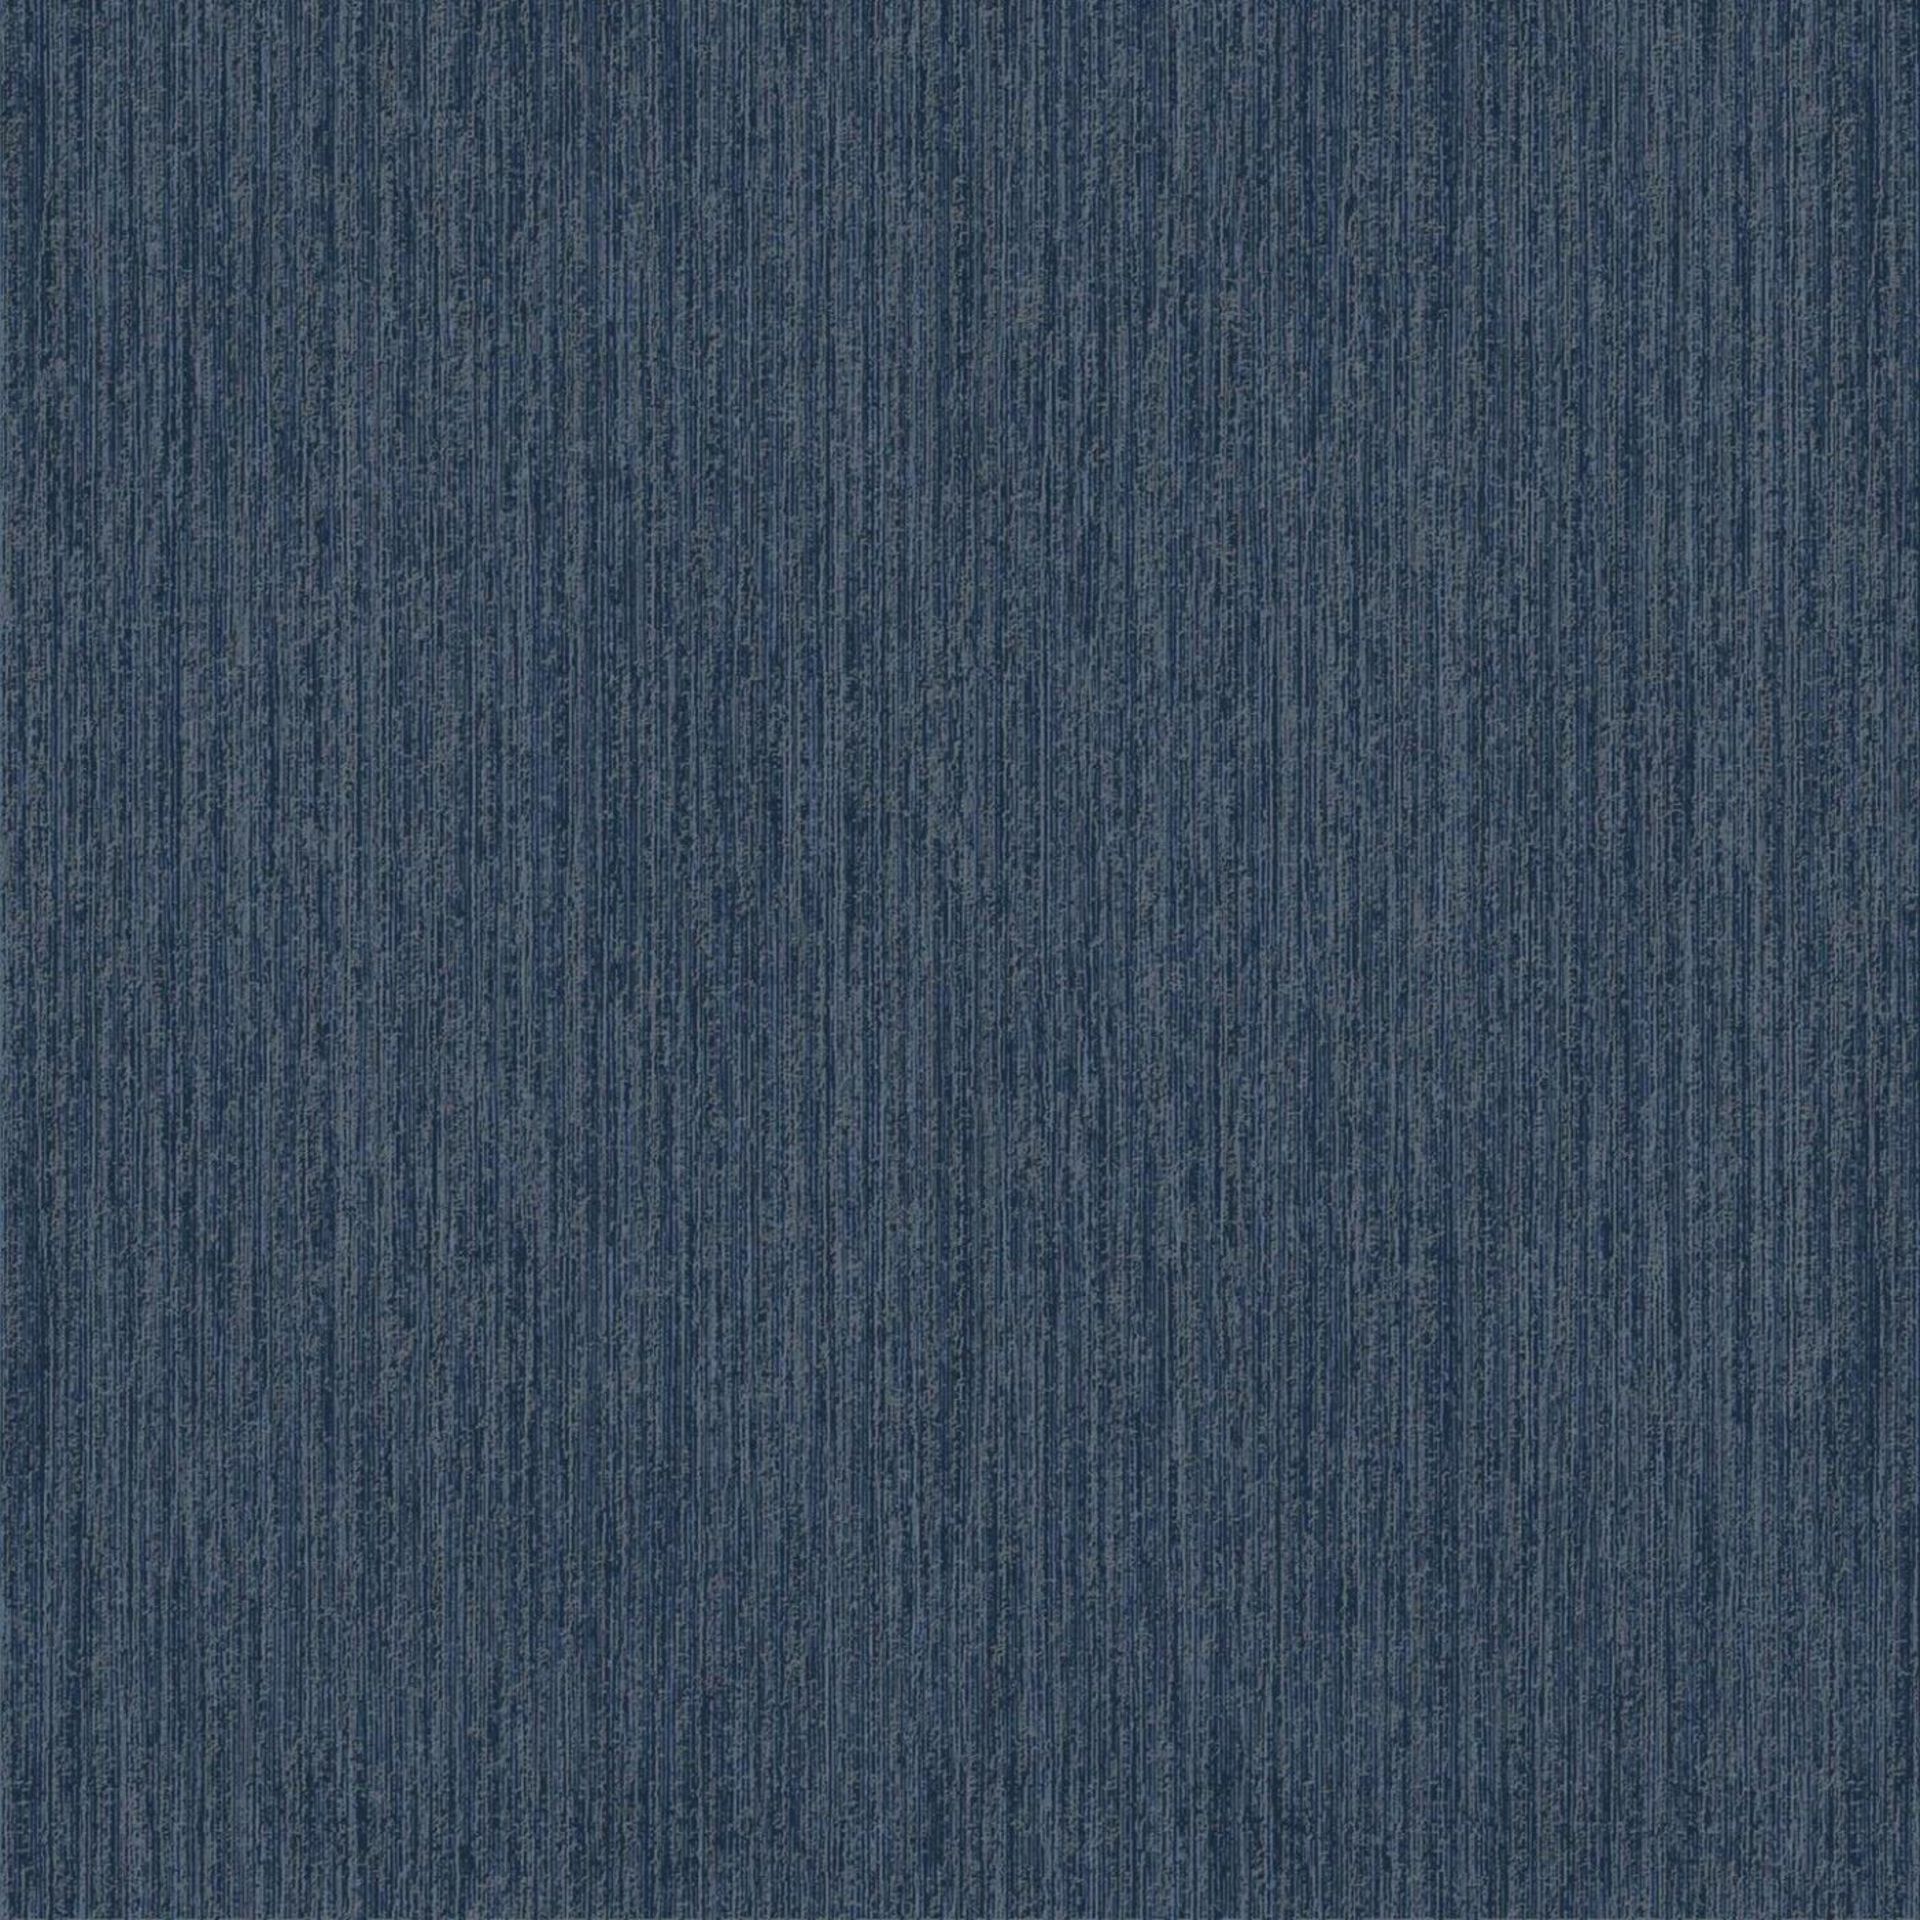 4x Muriva Indra Texture Blue Silver Wallpaper - ER47